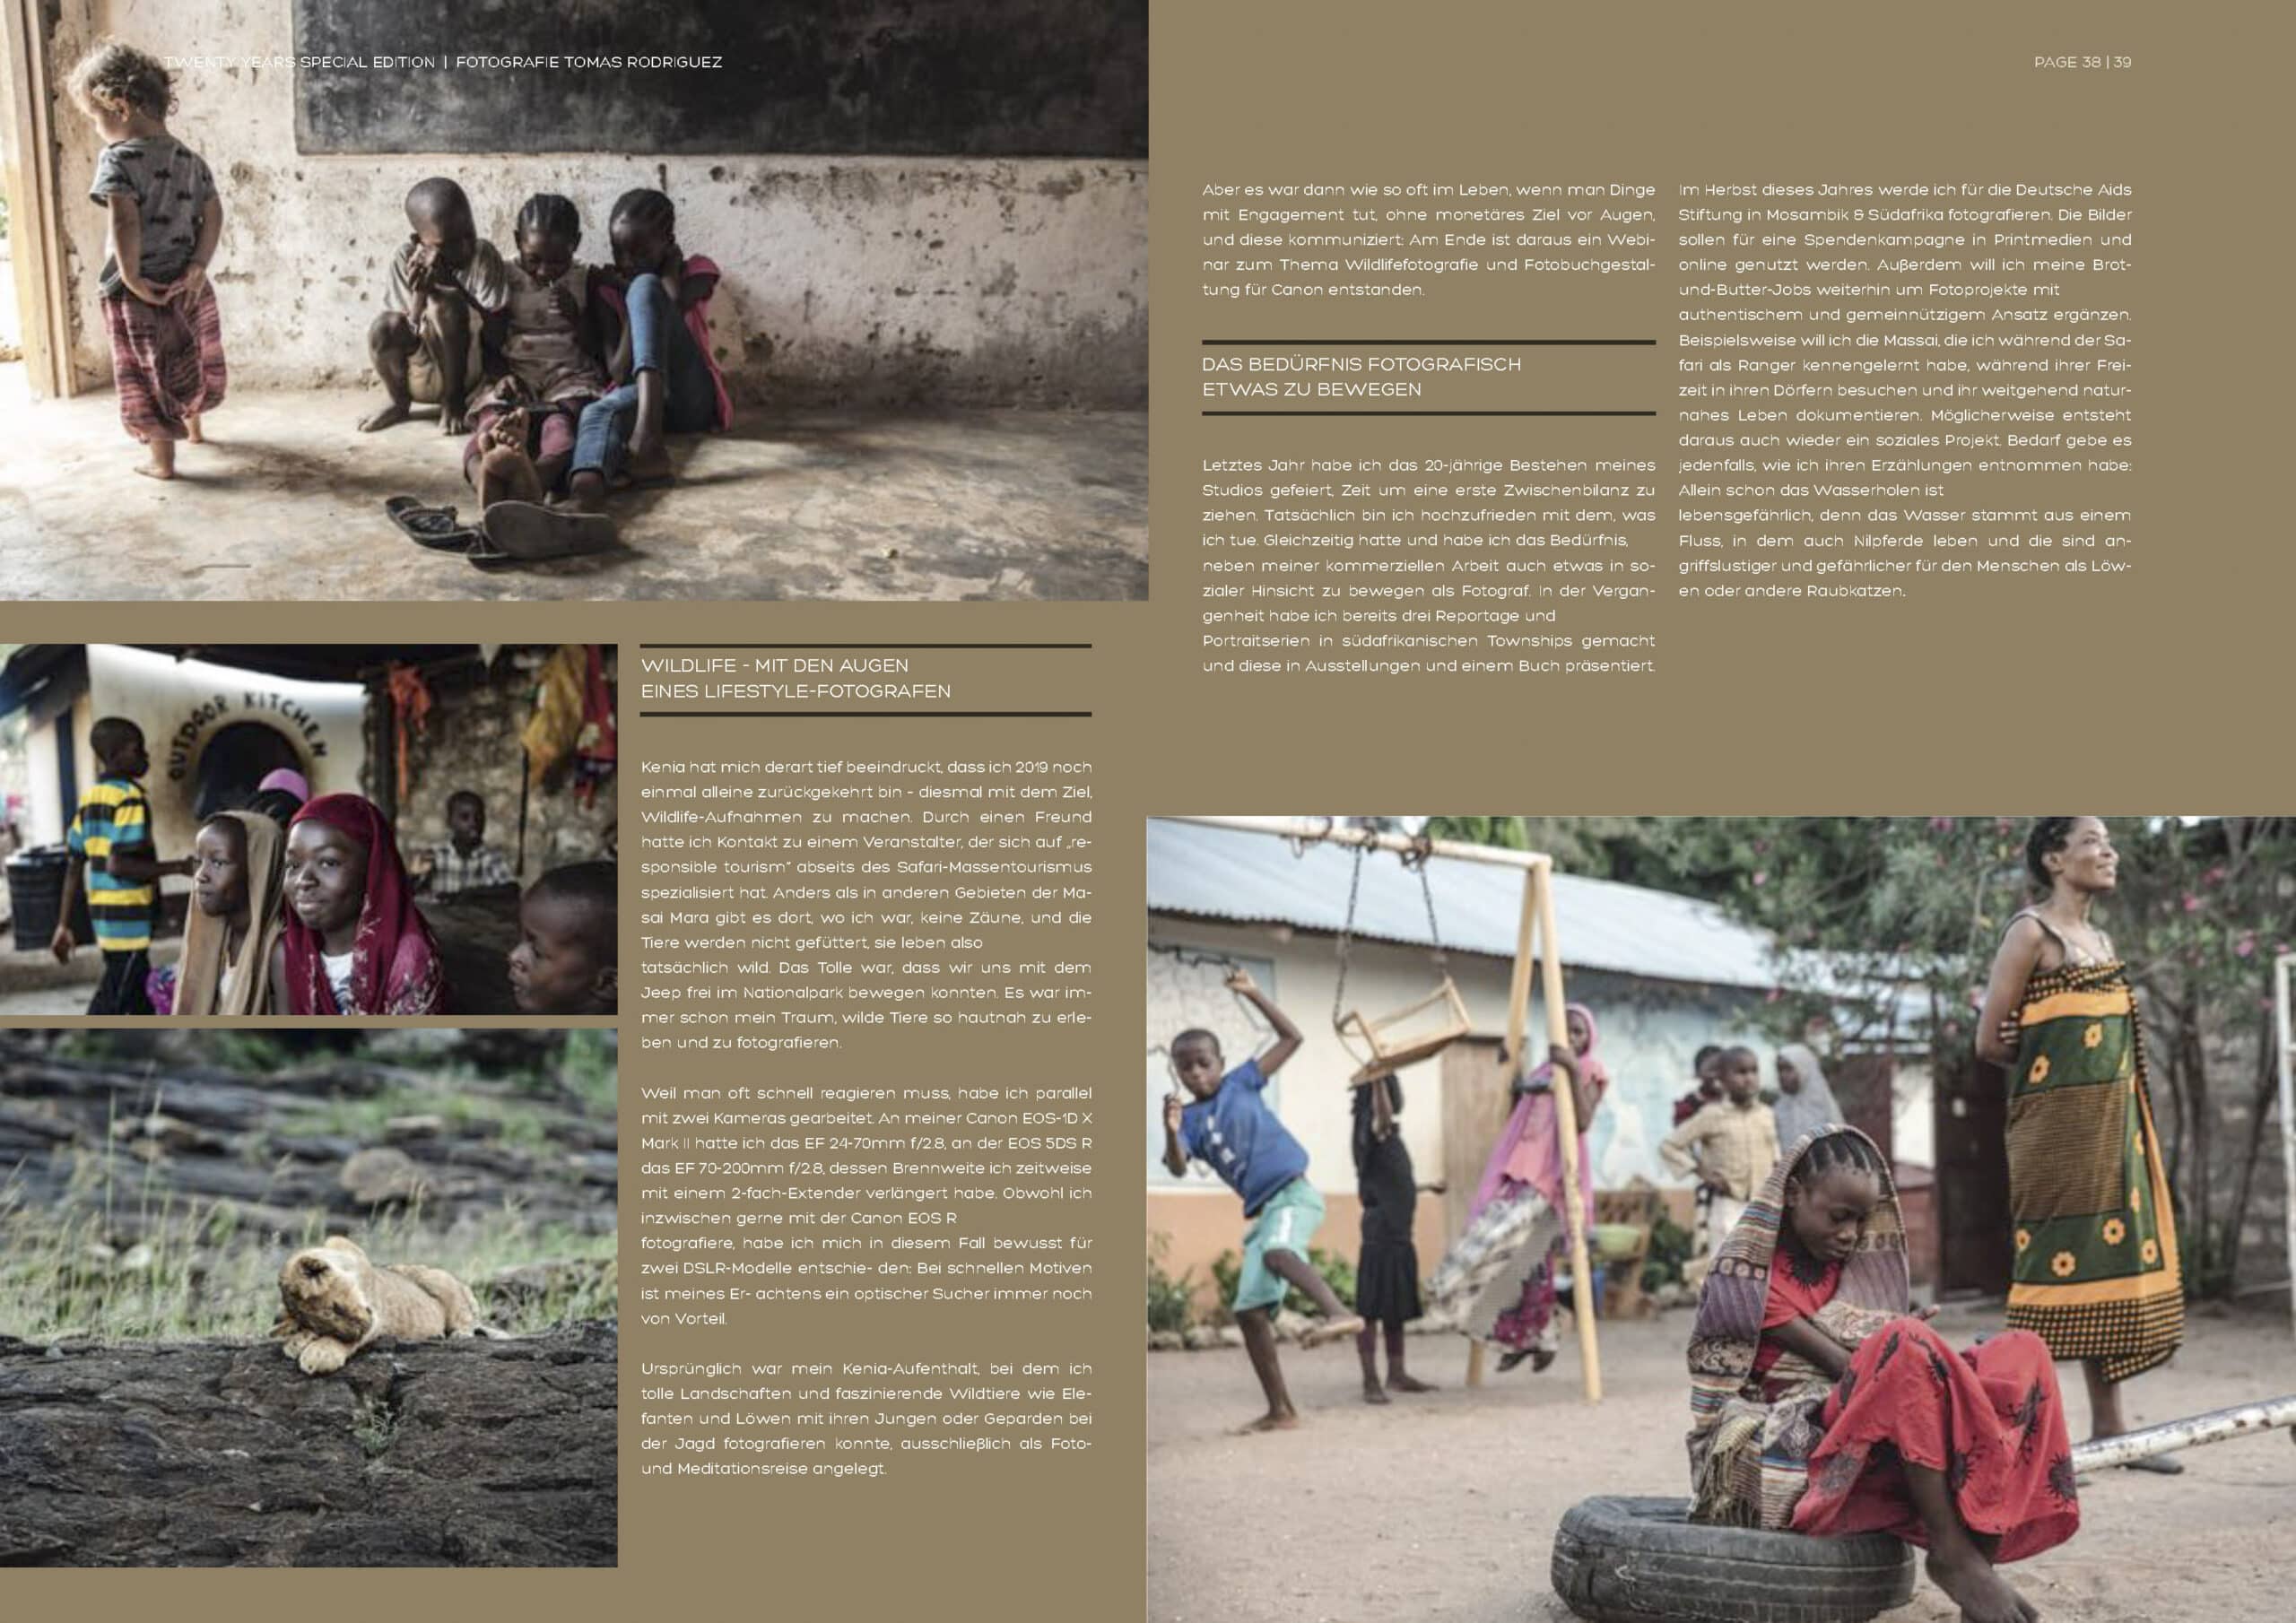 Eine Collage aus Bildern und Text, die das tägliche Leben in einem afrikanischen Dorf zeigt, darunter Szenen eines kleinen Jungen mit einem Reifen, Frauen in traditioneller Kleidung und verschiedene Interaktionen in der Gemeinschaft. © Fotografie Tomas Rodriguez